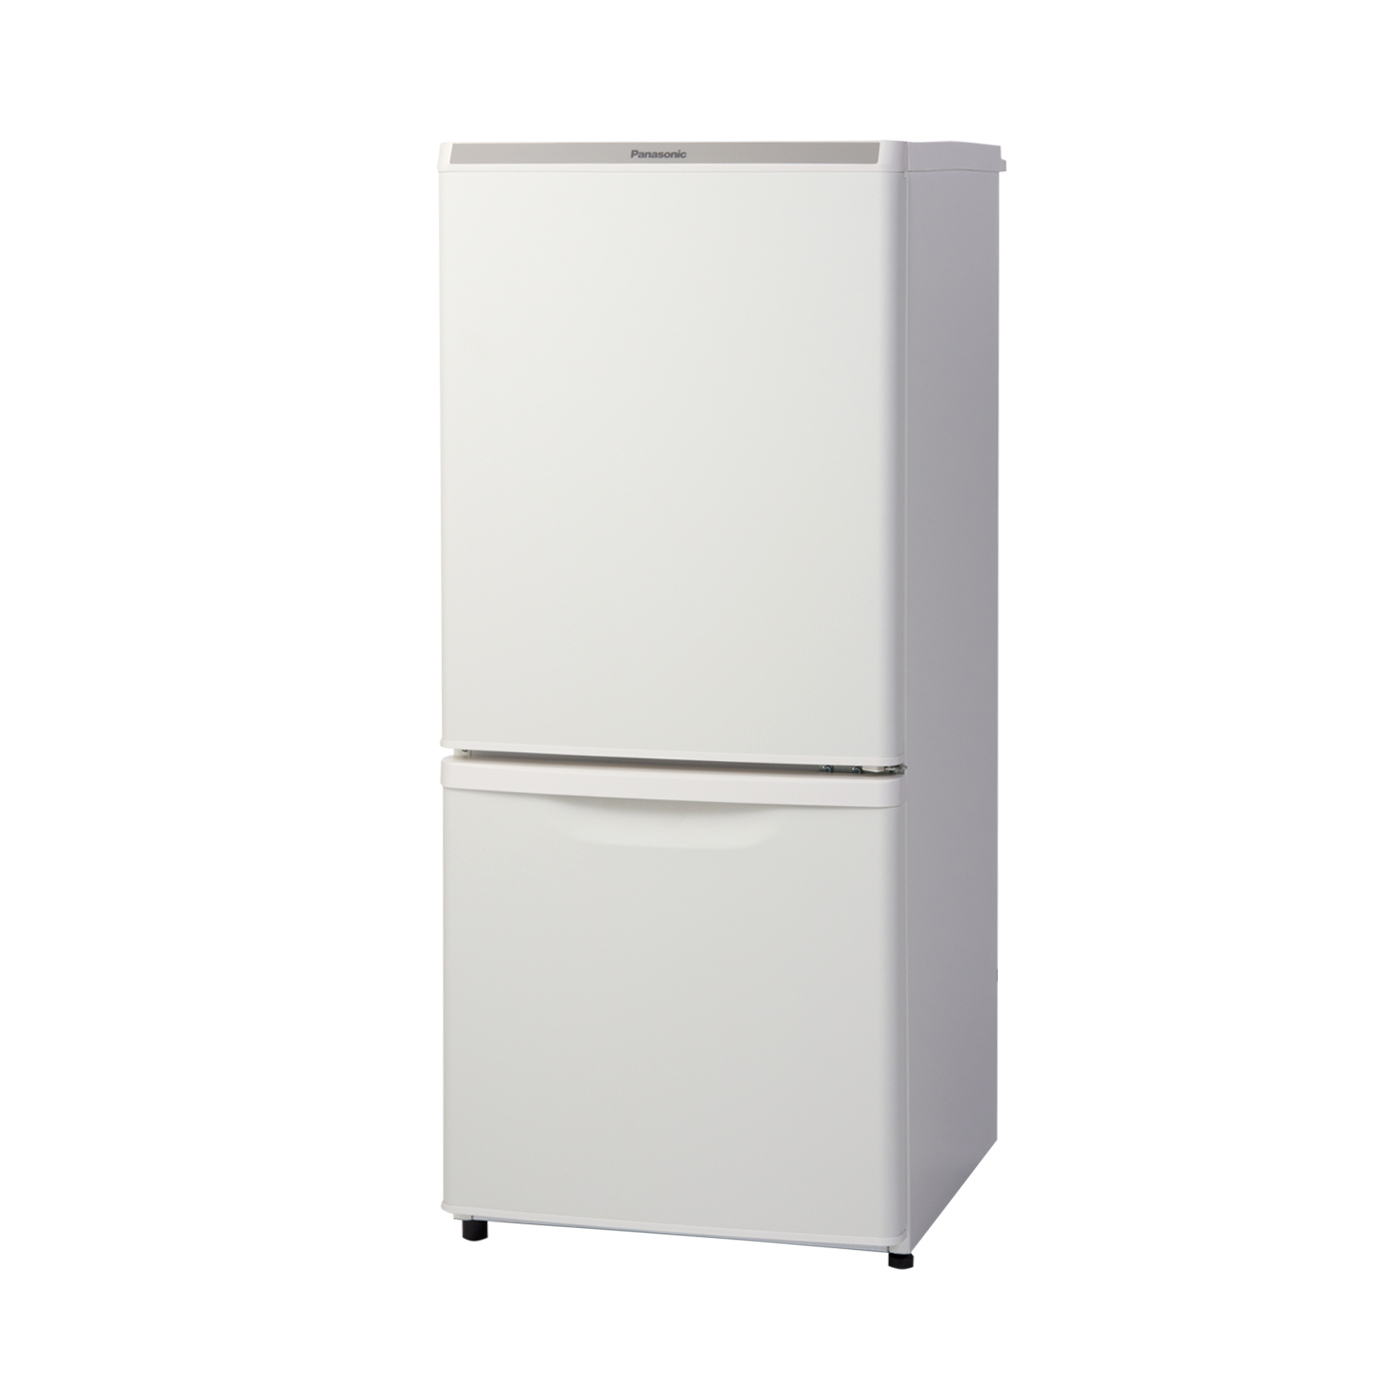 使用少ない美品 小型冷蔵庫 46L 冷凍スペース付き ホテルの冷蔵庫